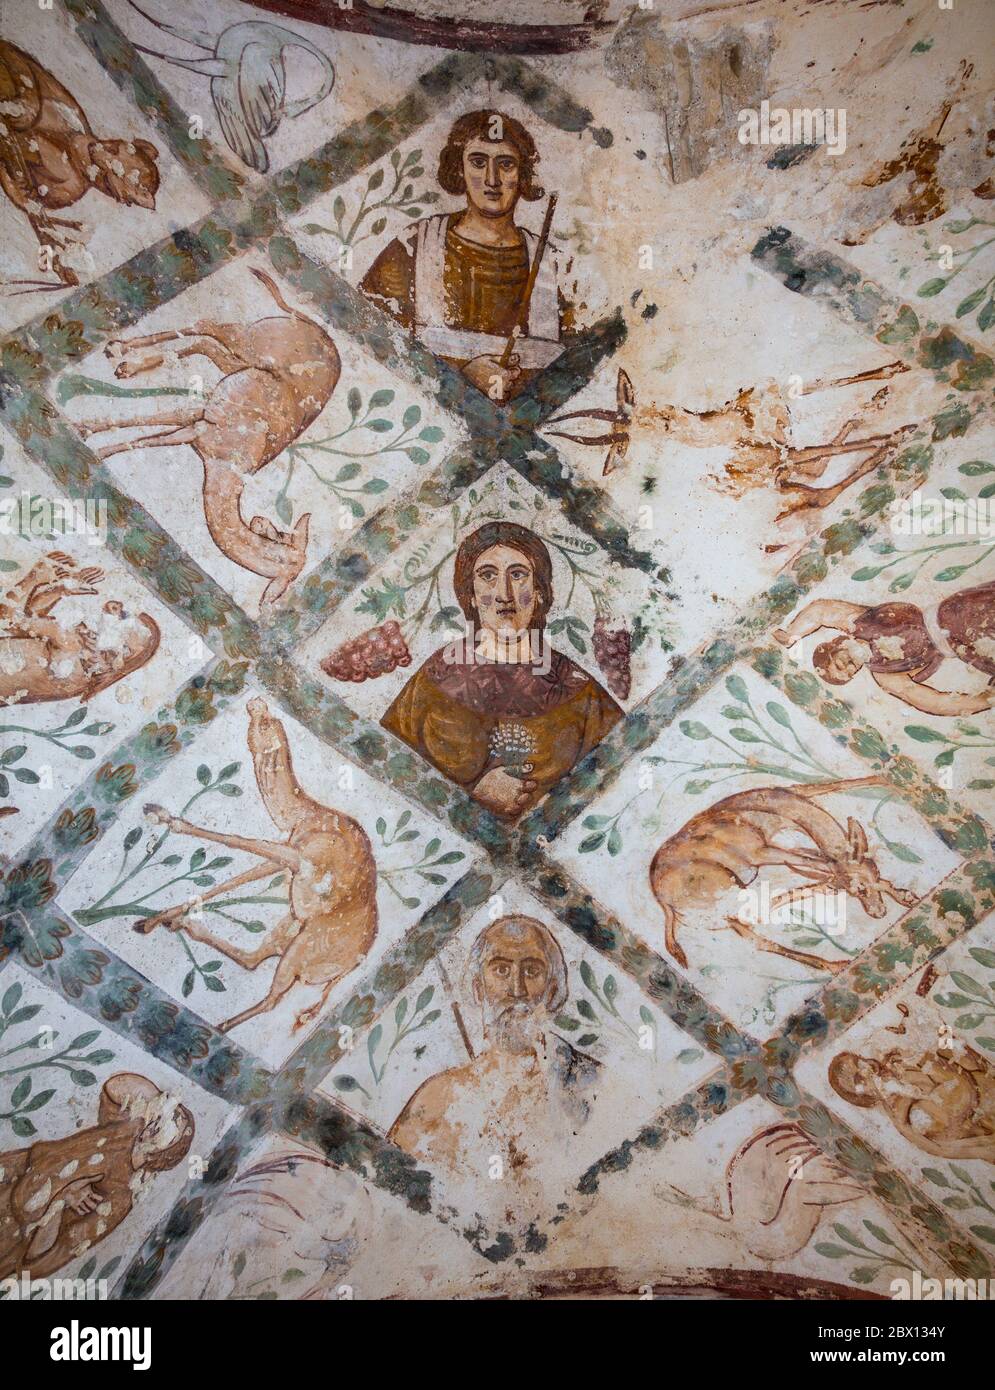 Detail der Malerei die drei Lebensalter des Menschen, Apodyterium oder Umkleidekabine, Quseir Amra oder Qusayr Amra, Jordanien Stockfoto